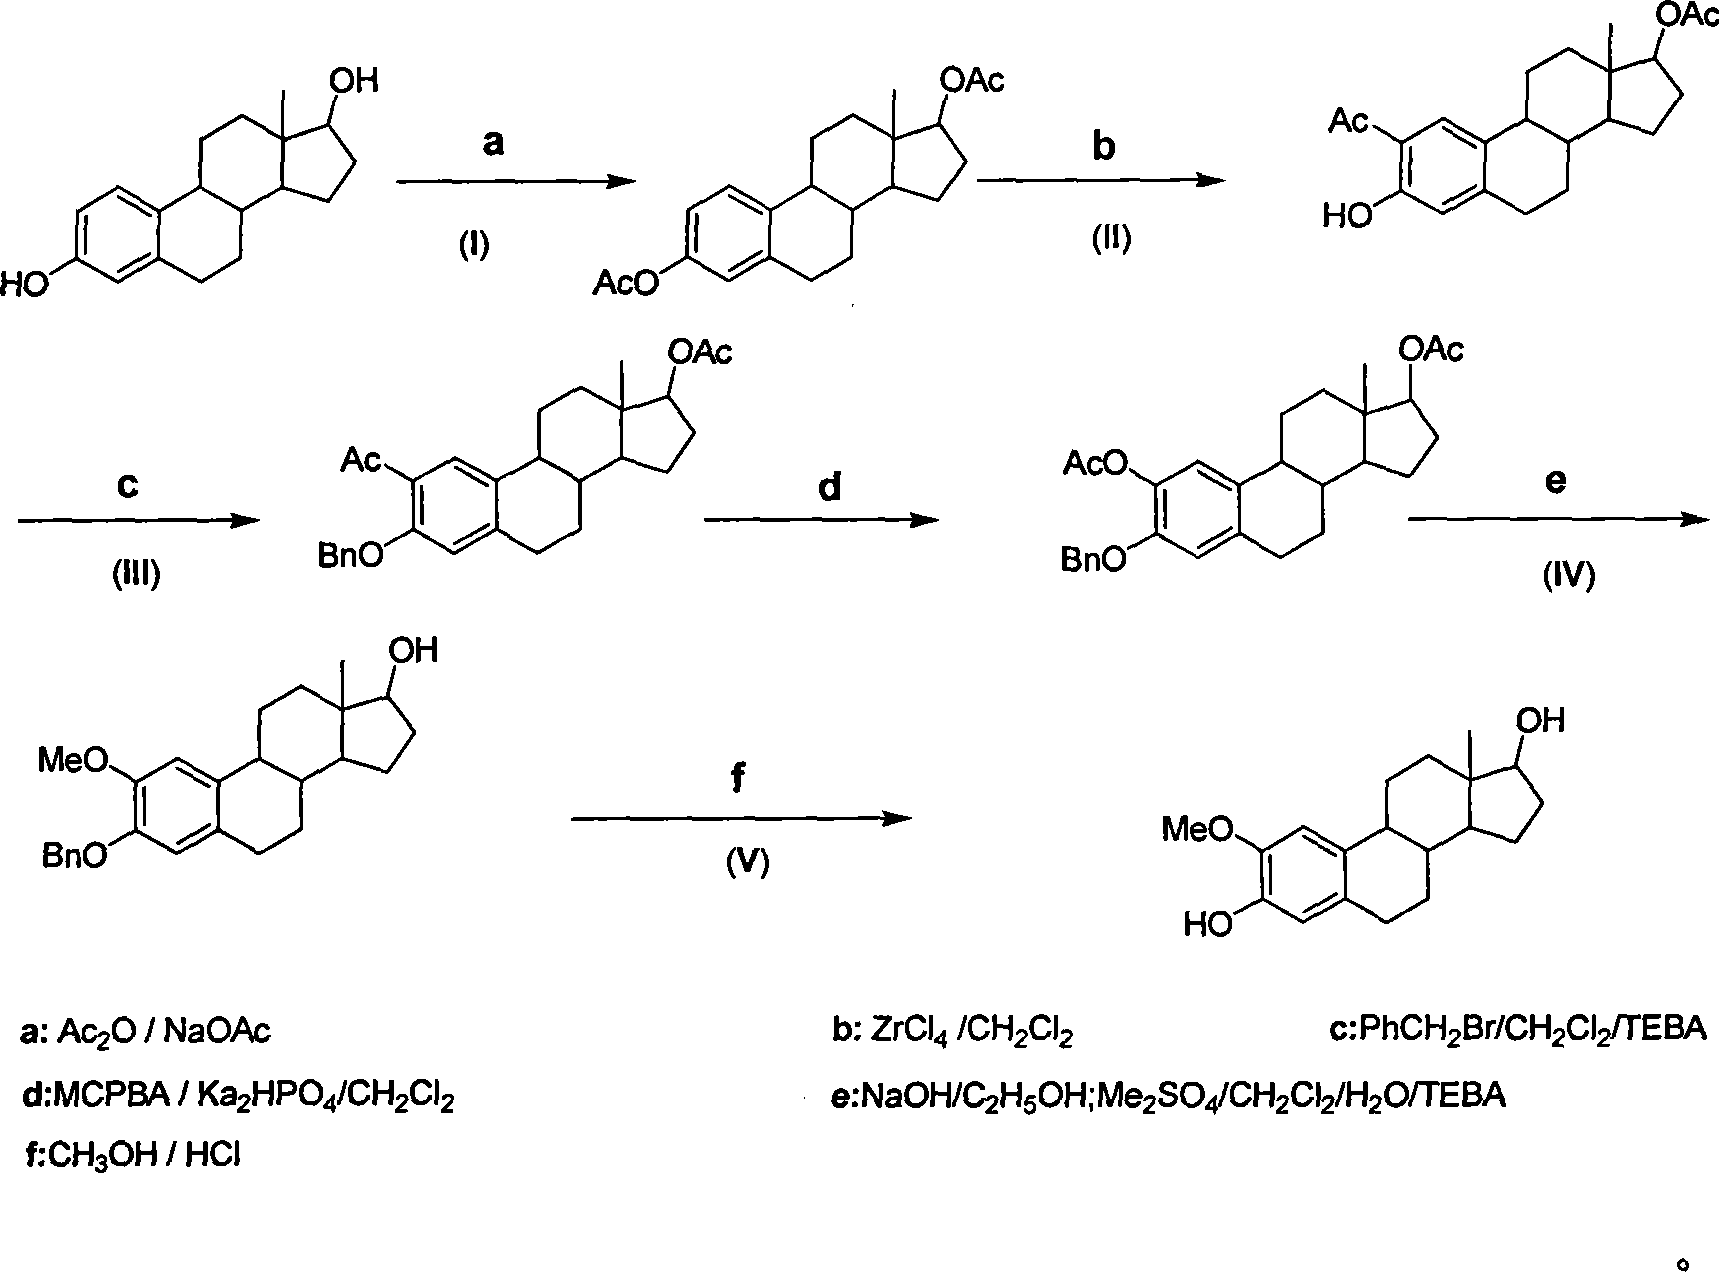 Method for synthesizing 2-methoxy estradiol